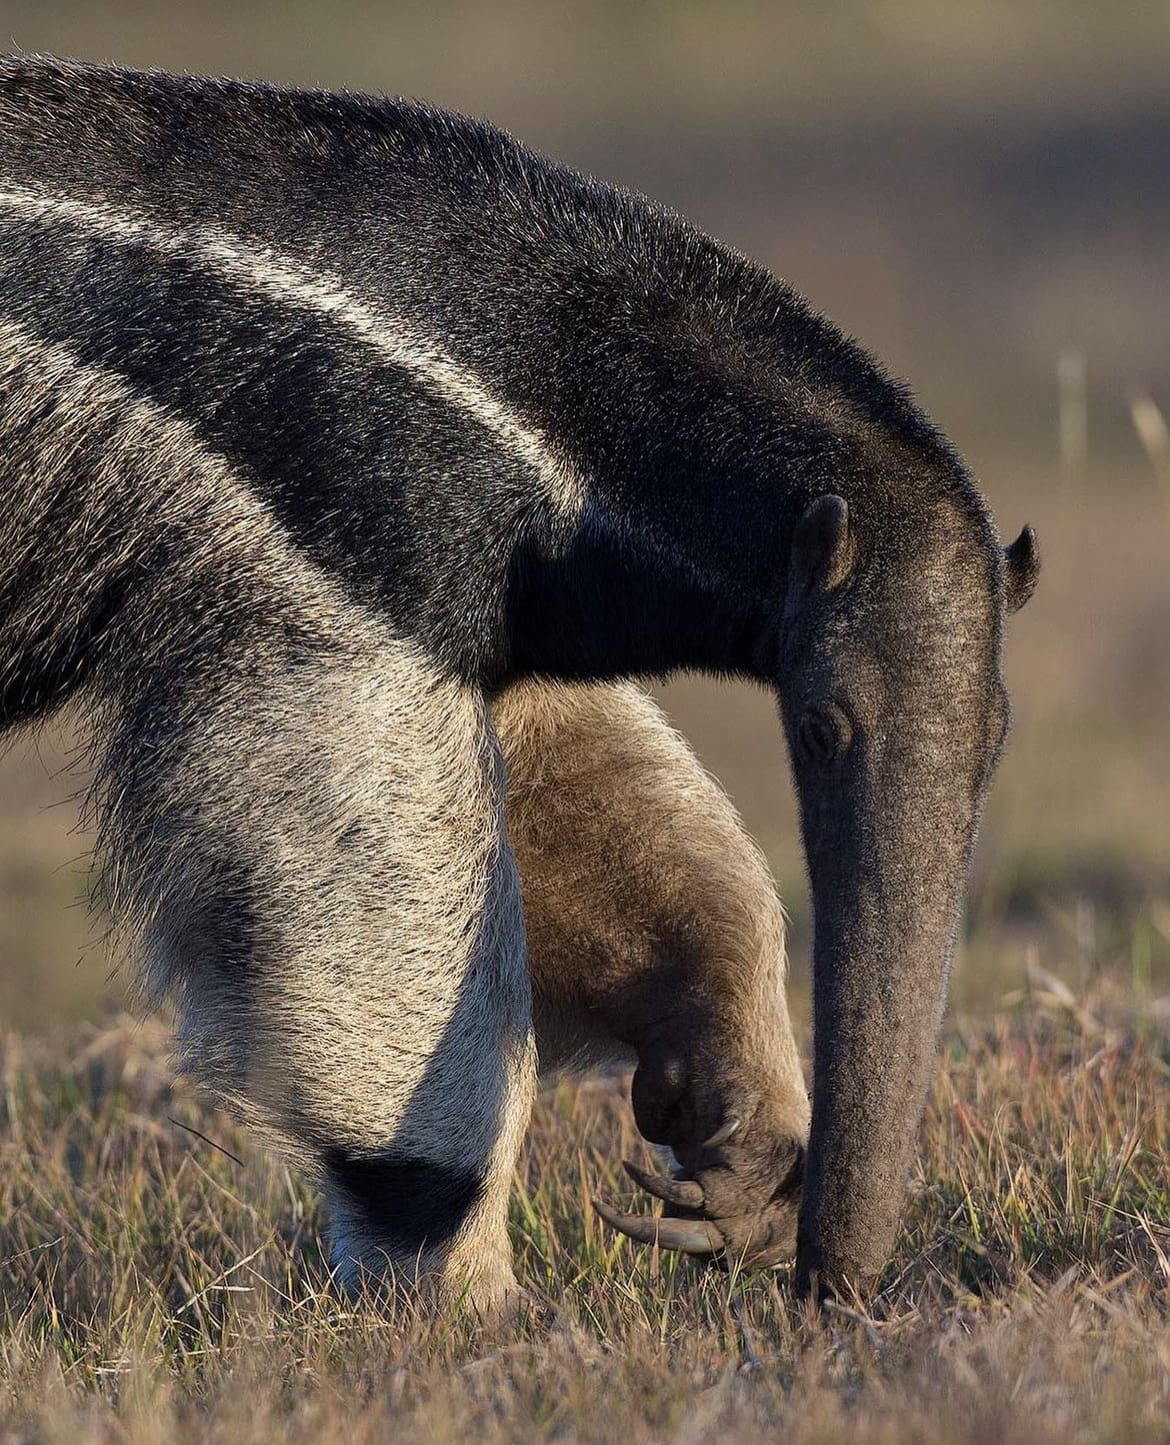 Giant anteater closeup